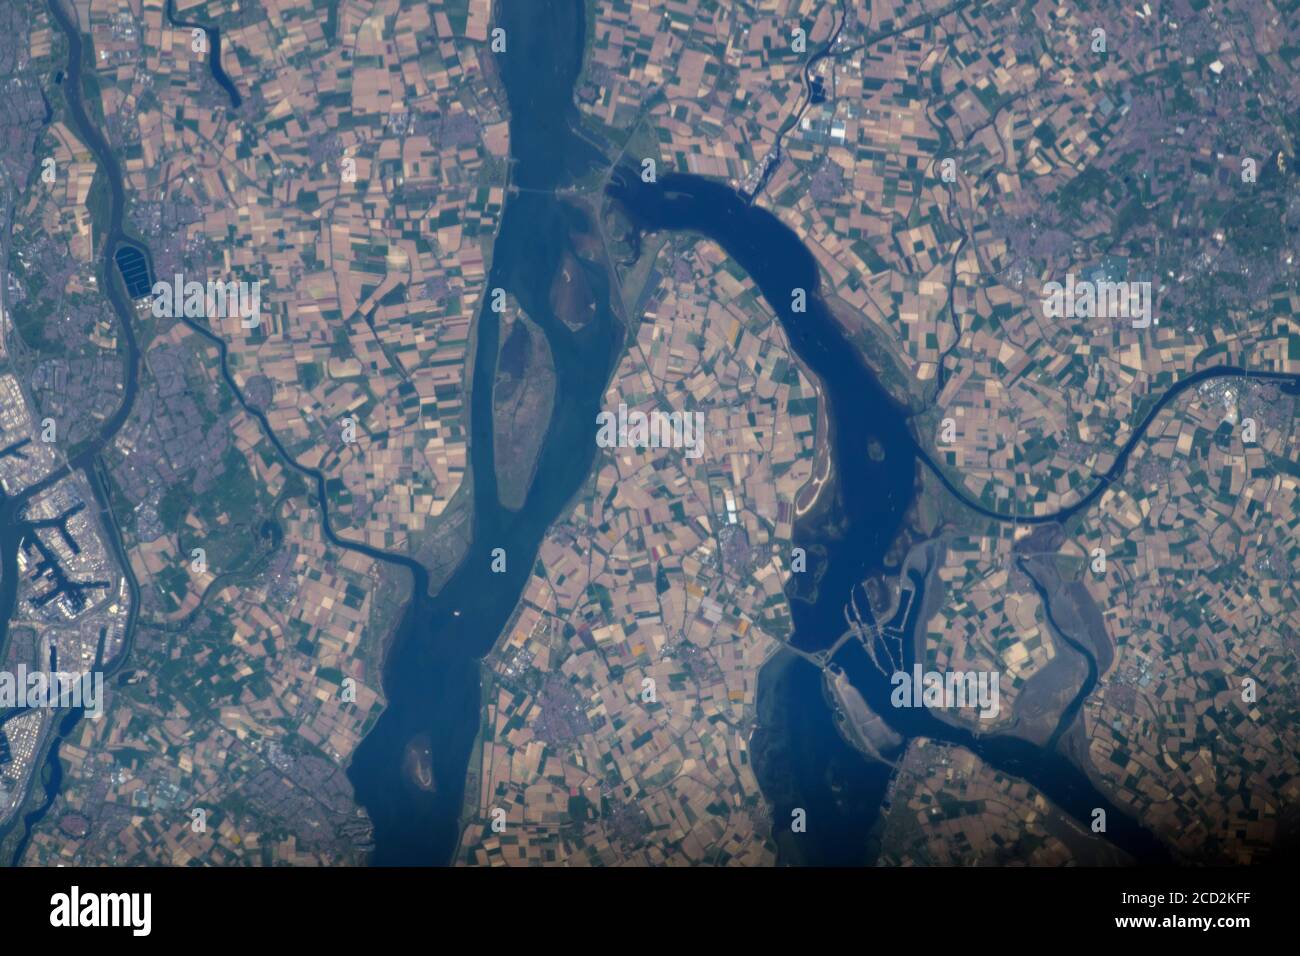 NIEDERLANDE - 23. April 2020 - das Rhein-Maas-Schelde-Delta, ein Flussdelta in den Niederlanden, ist von der Internationalen Raumstation aufgenommen - Stockfoto